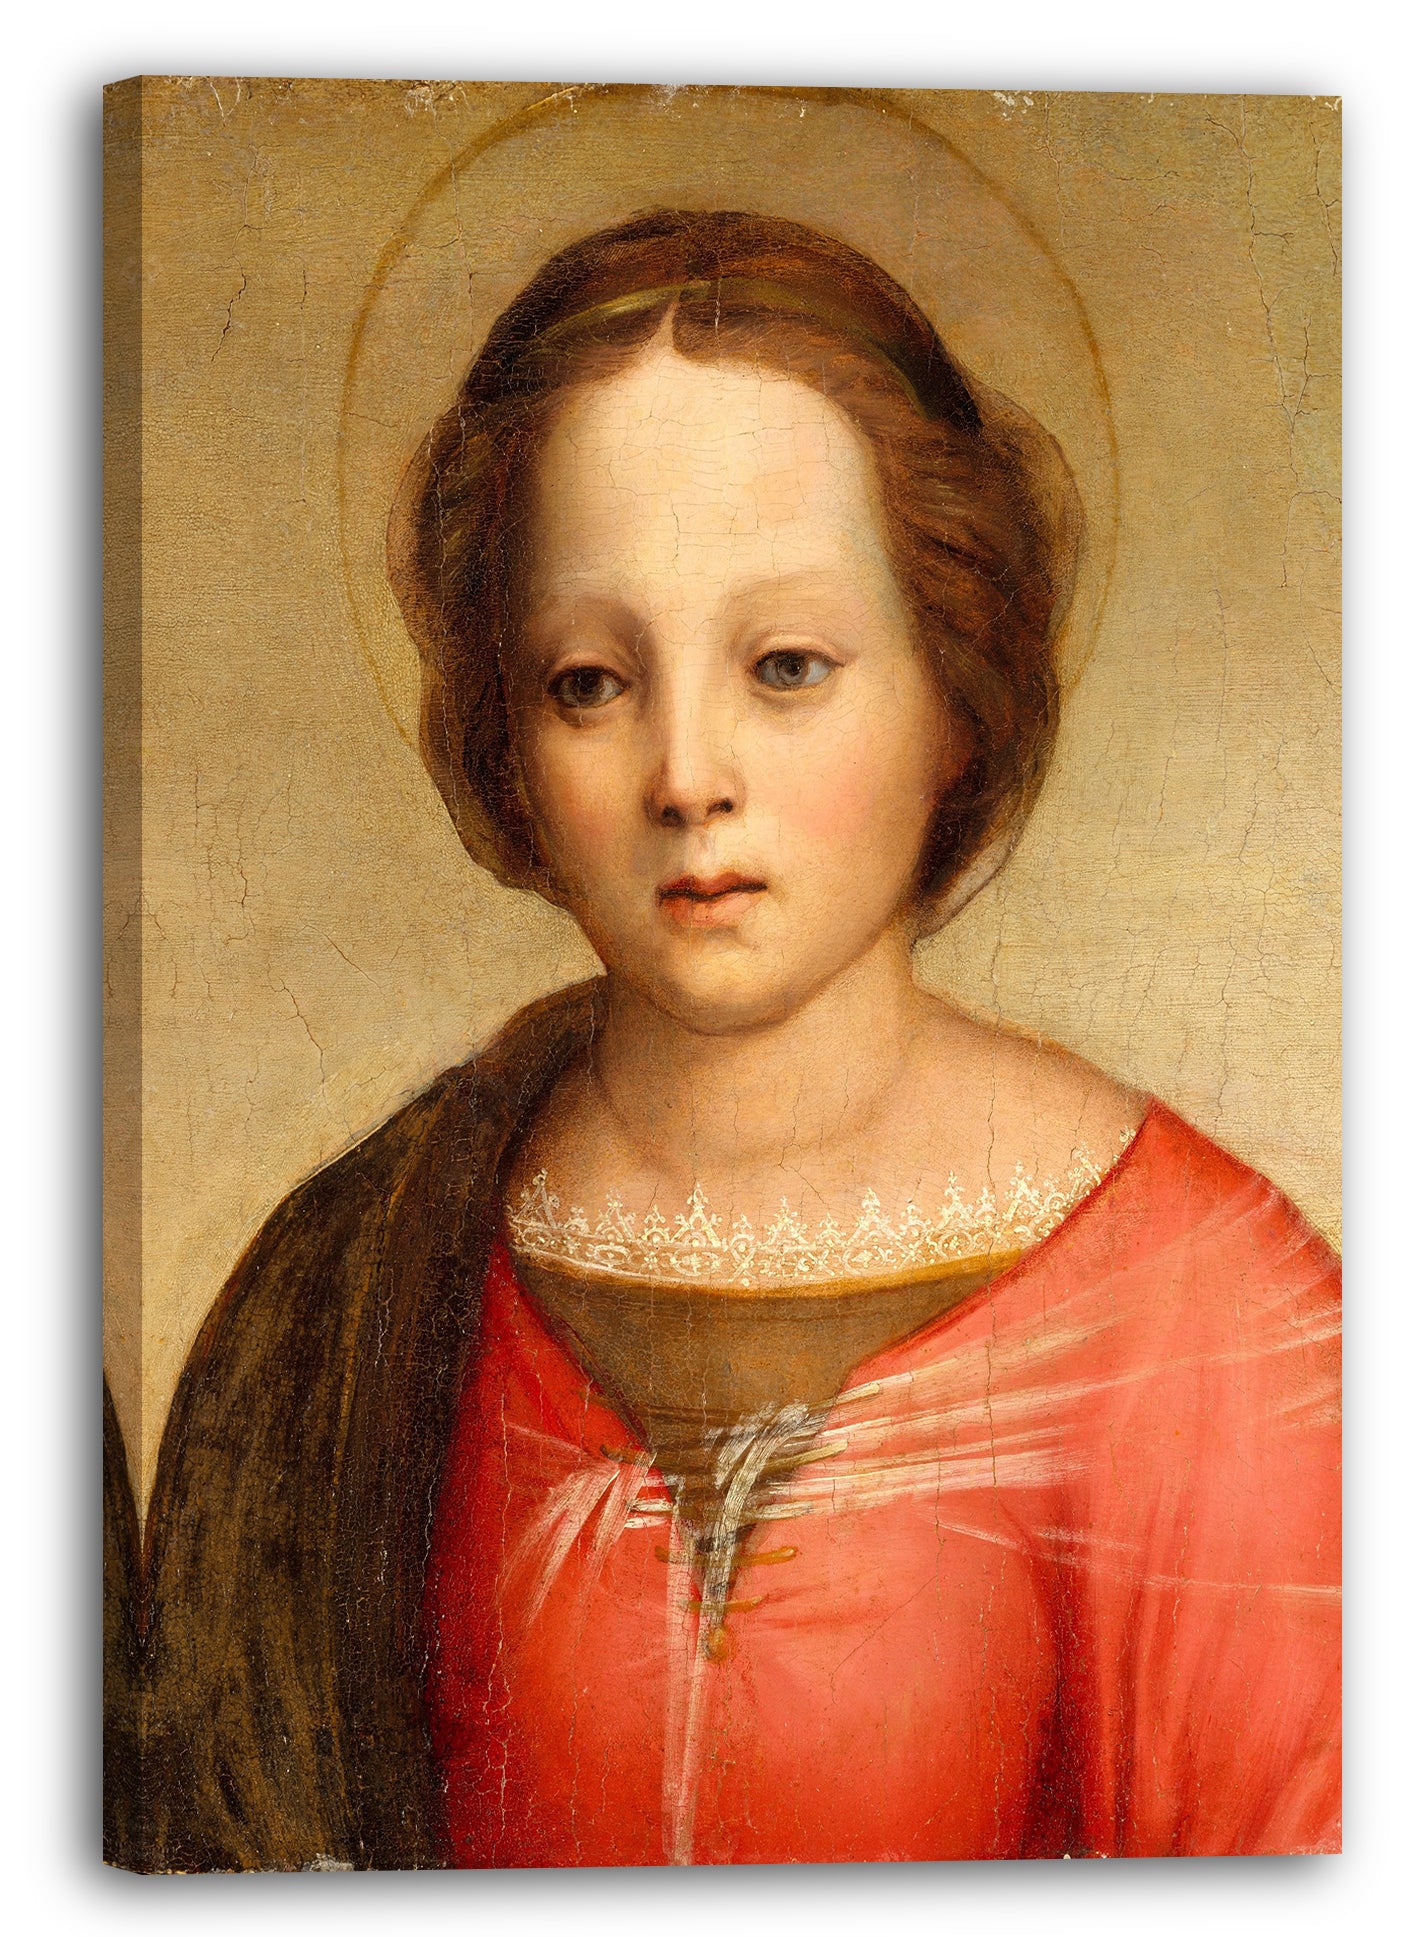 Leinwandbild Franciabigio (Francesco di Cristofano) (Italienisch, Florenz 1484-1525 Florenz) - Kopf der Madonna